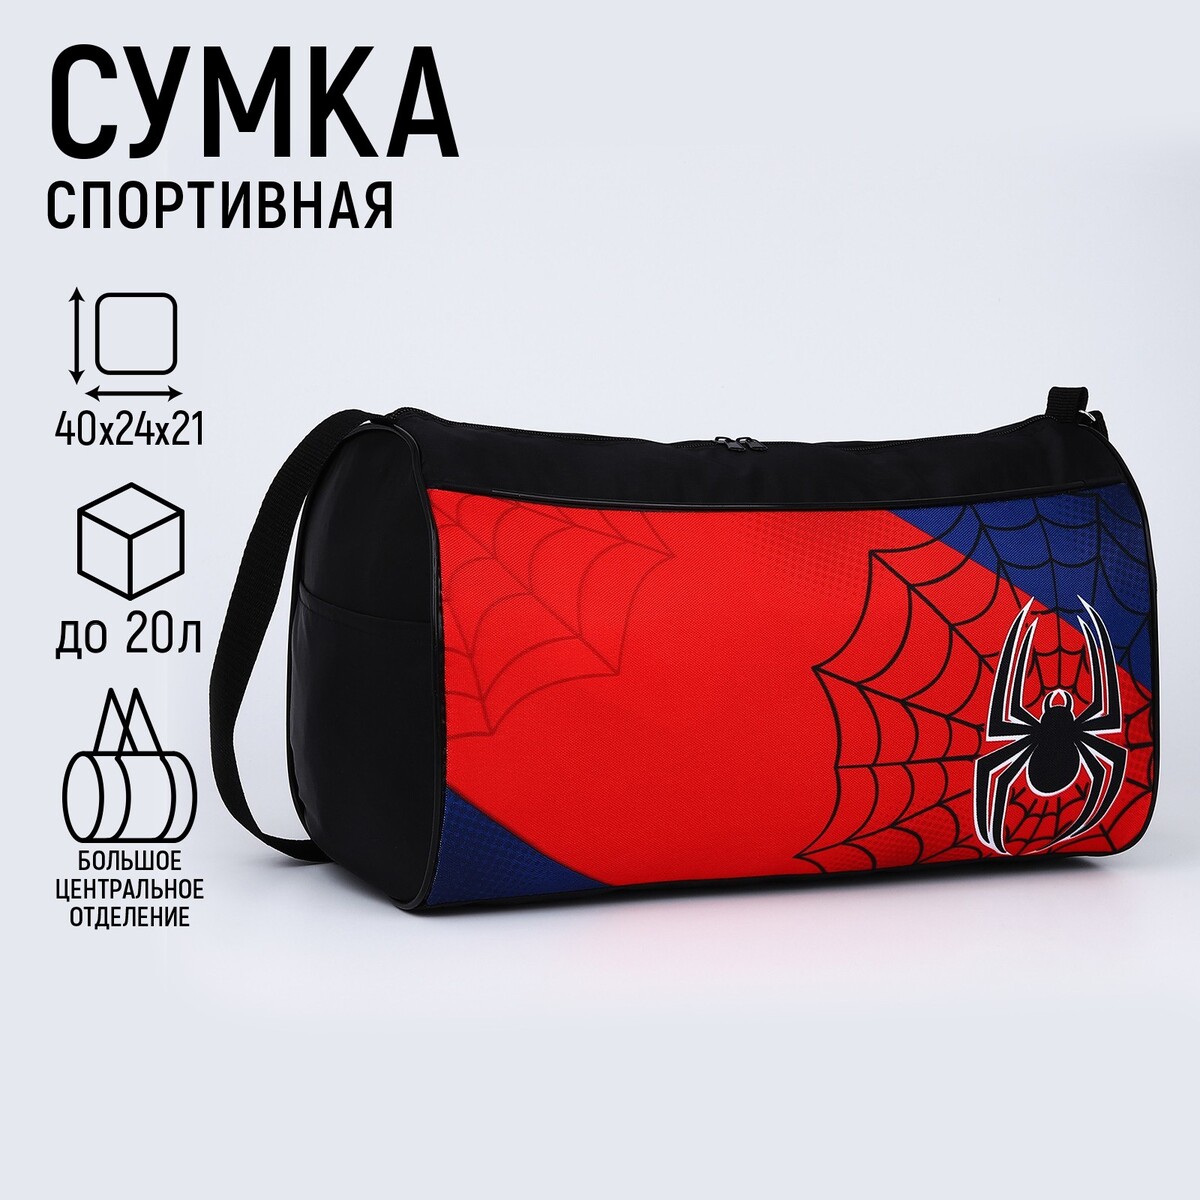 Сумка спортивная паук, 40х21х24 см, цвет черный, красный, синий сумка спортивная футбол 40х21х24 см